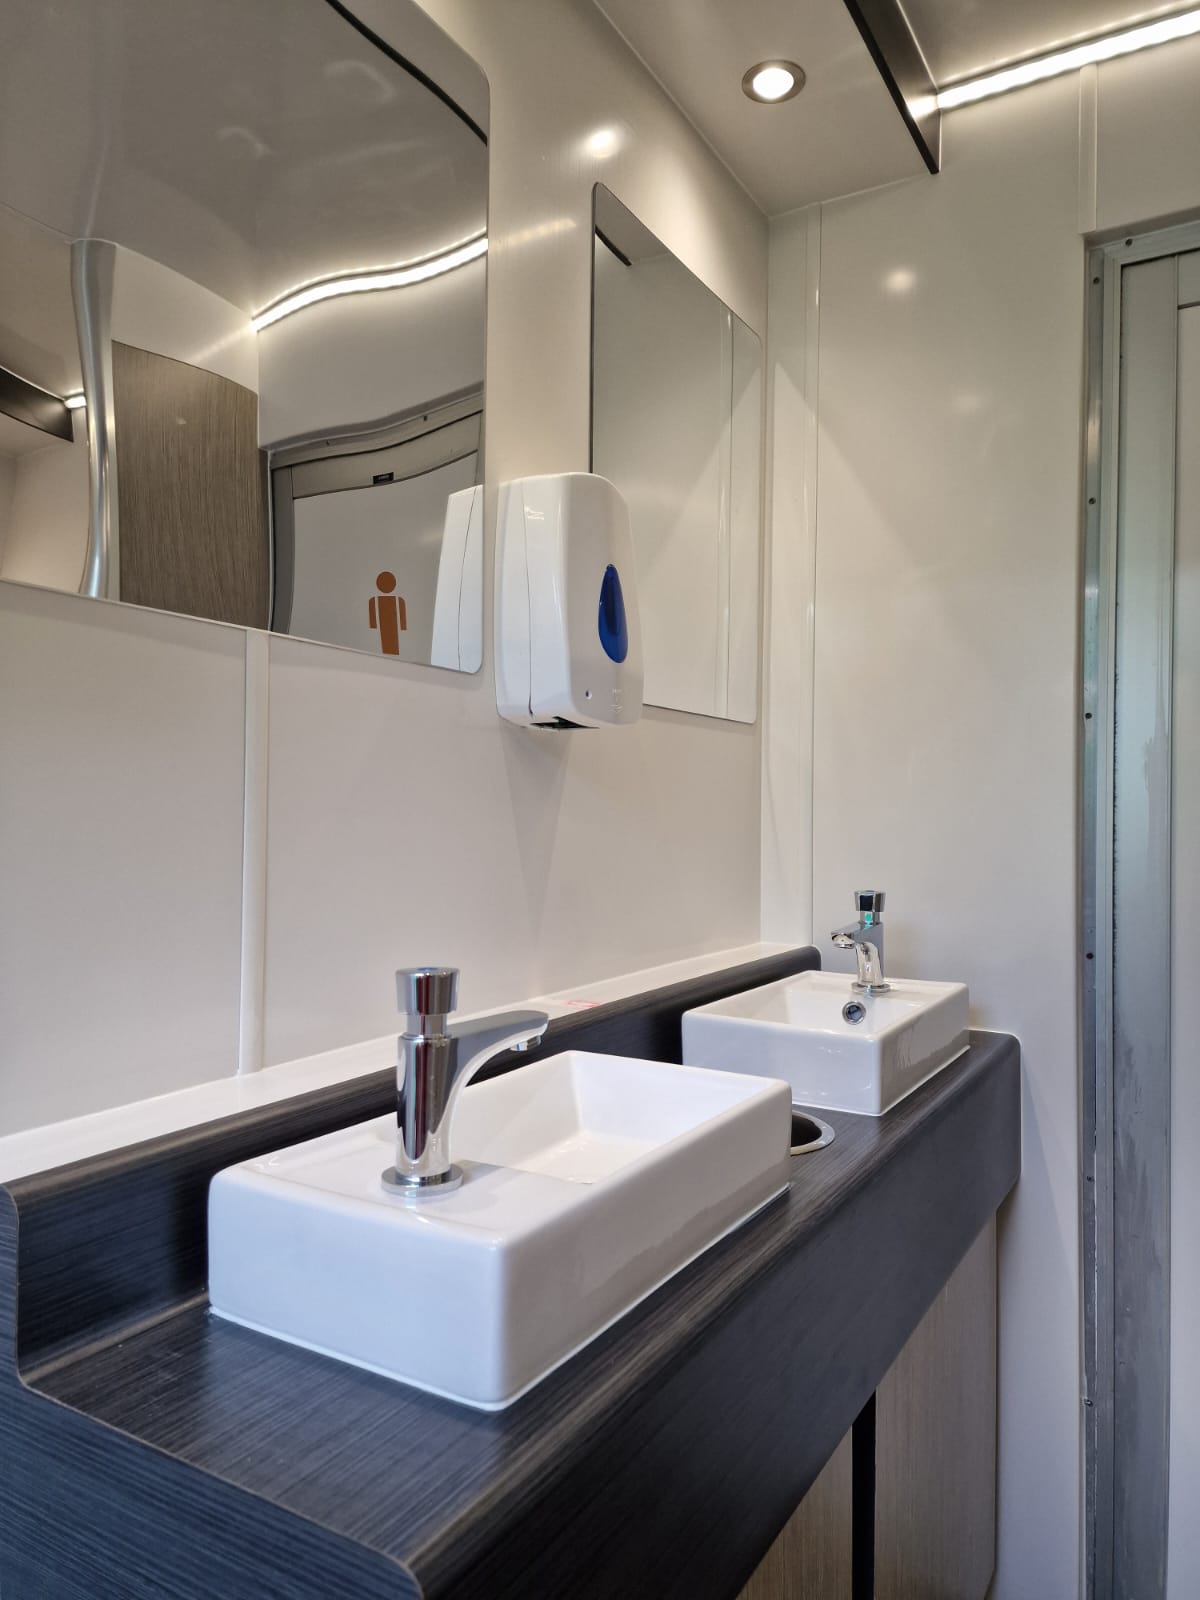 Sinks inside luxury toilet